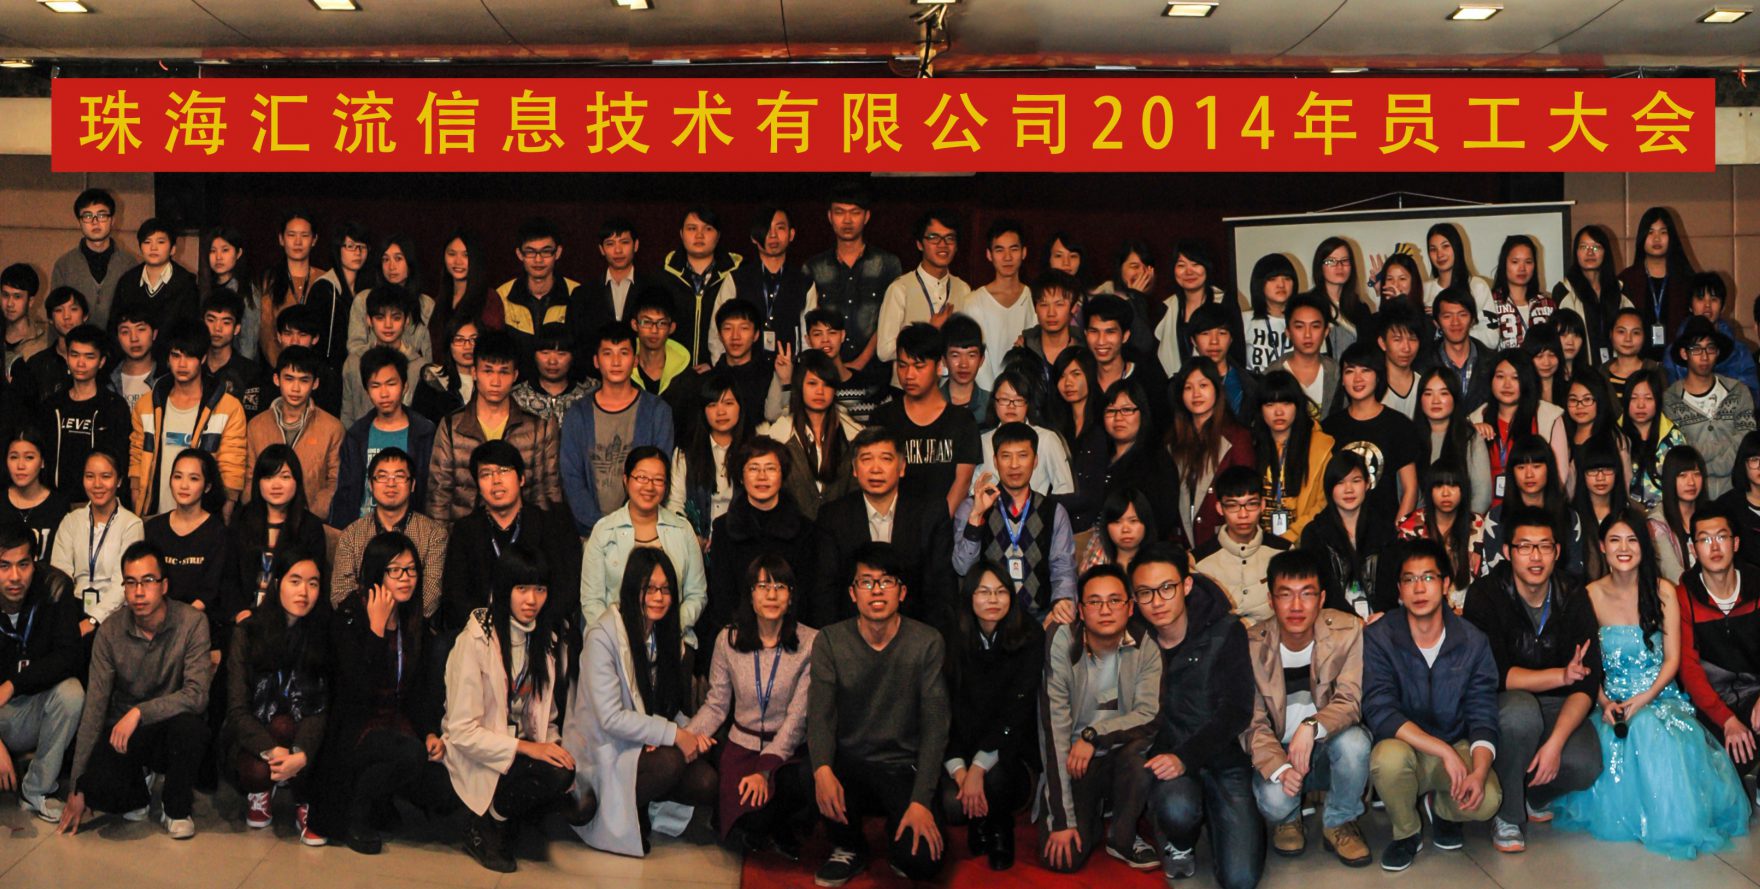 201502-2014年度员工大会